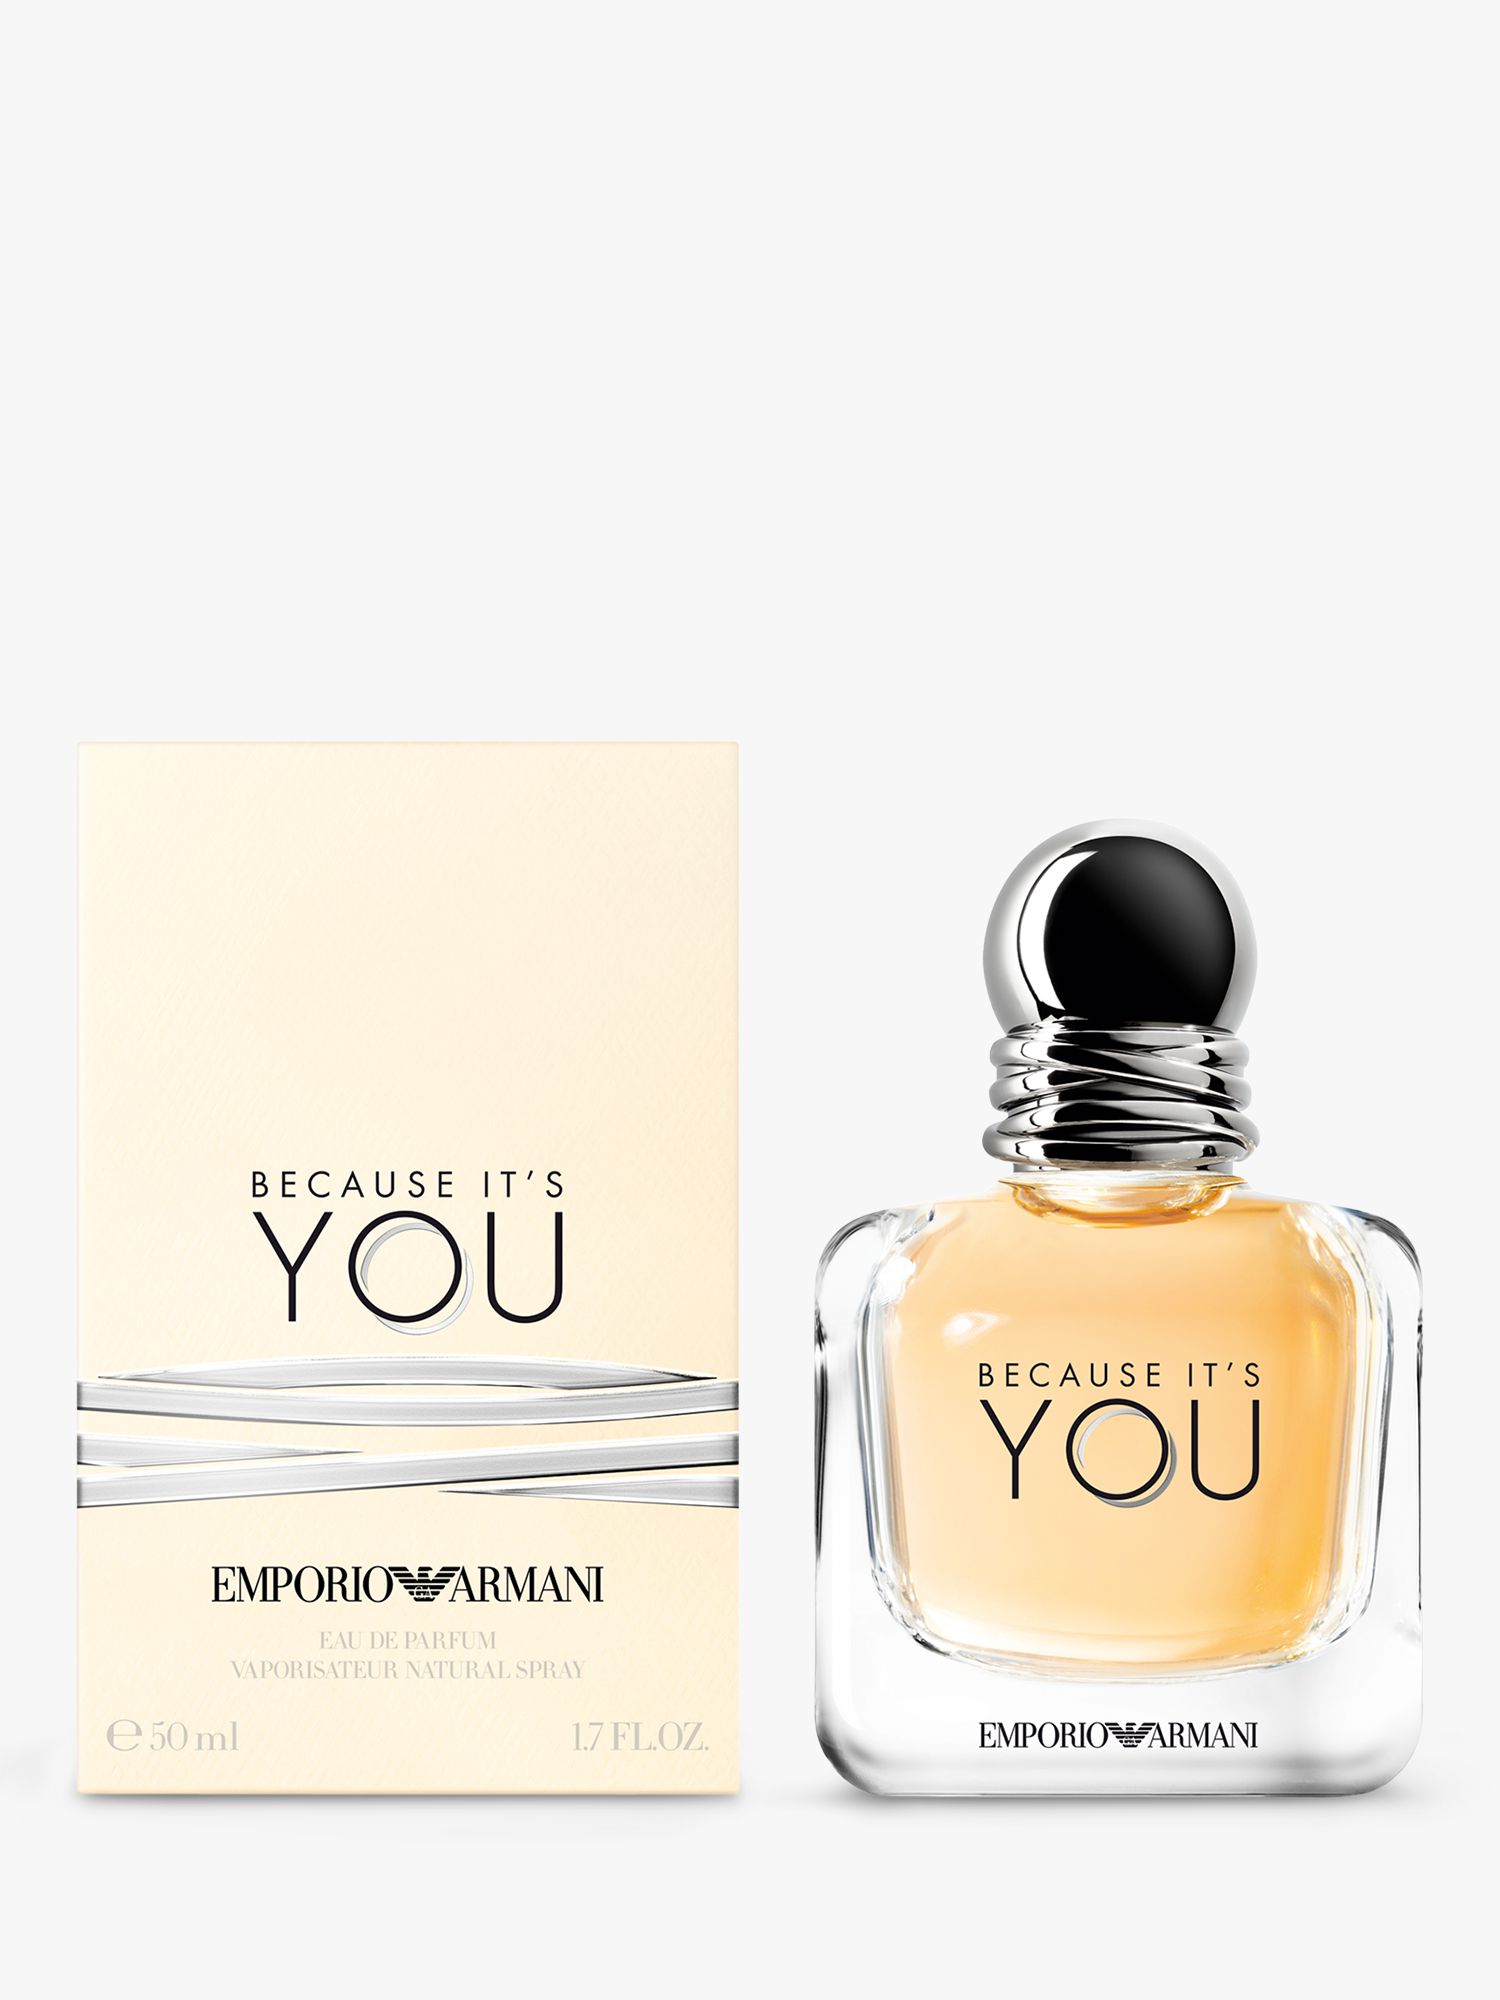 Emporio Armani Because It's You Eau de Parfum, 50ml at John Lewis &  Partners